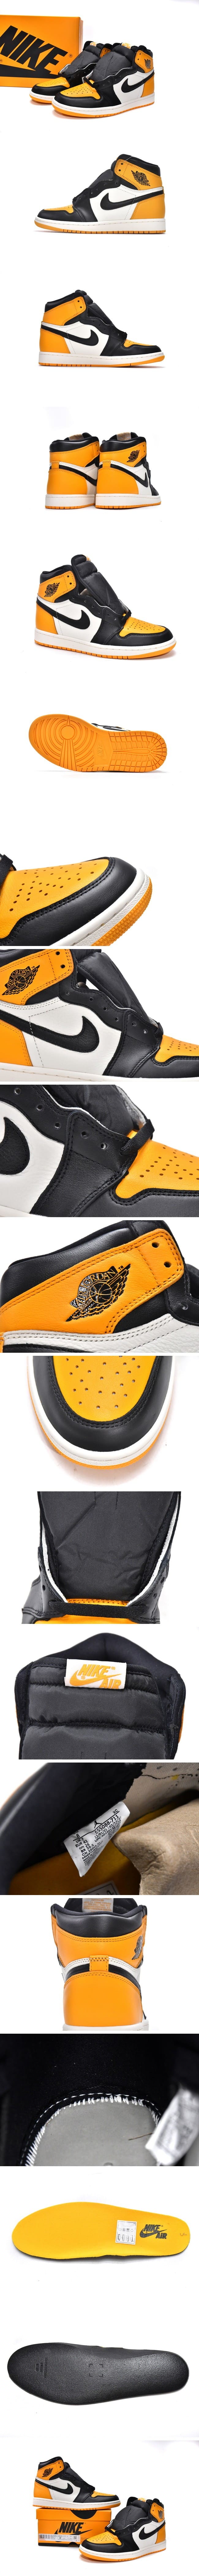 Nike Air Jordan 1 High OG Yellow Toe 555088-711 ナイキ エアジョーダン1 レトロ ハイ イエロートゥ